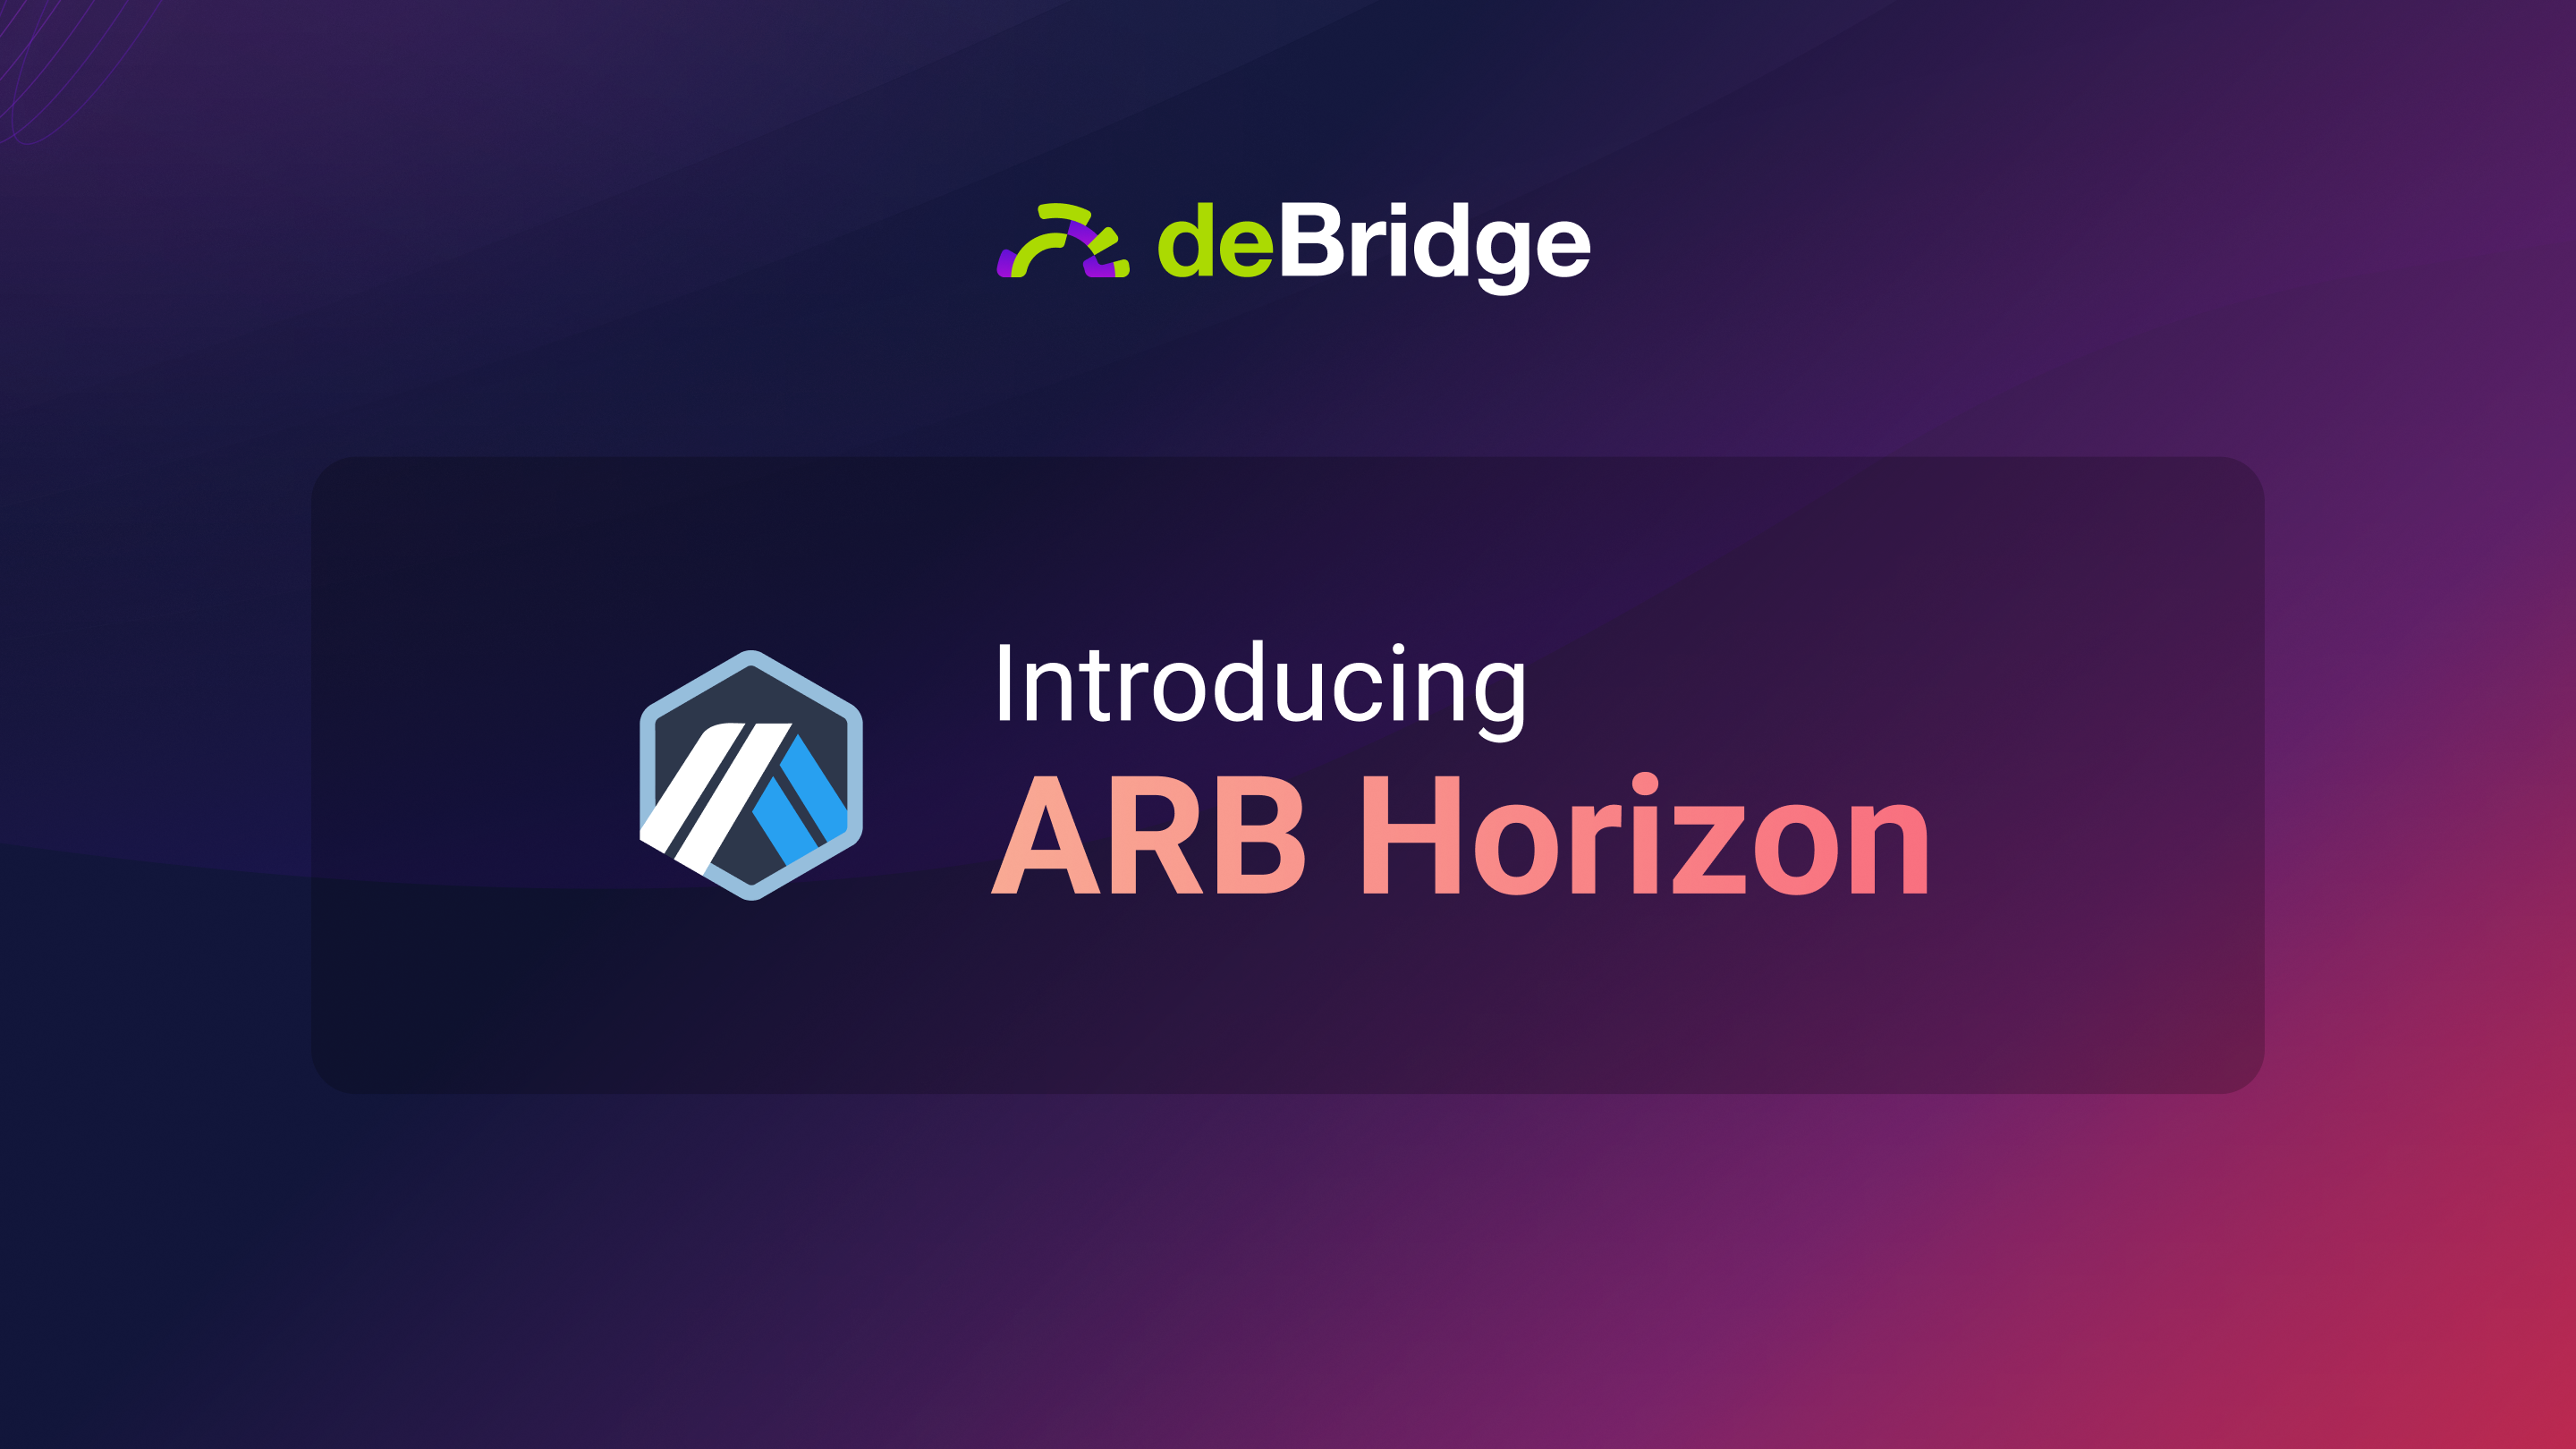 deBridge ARB Horizon is now live!